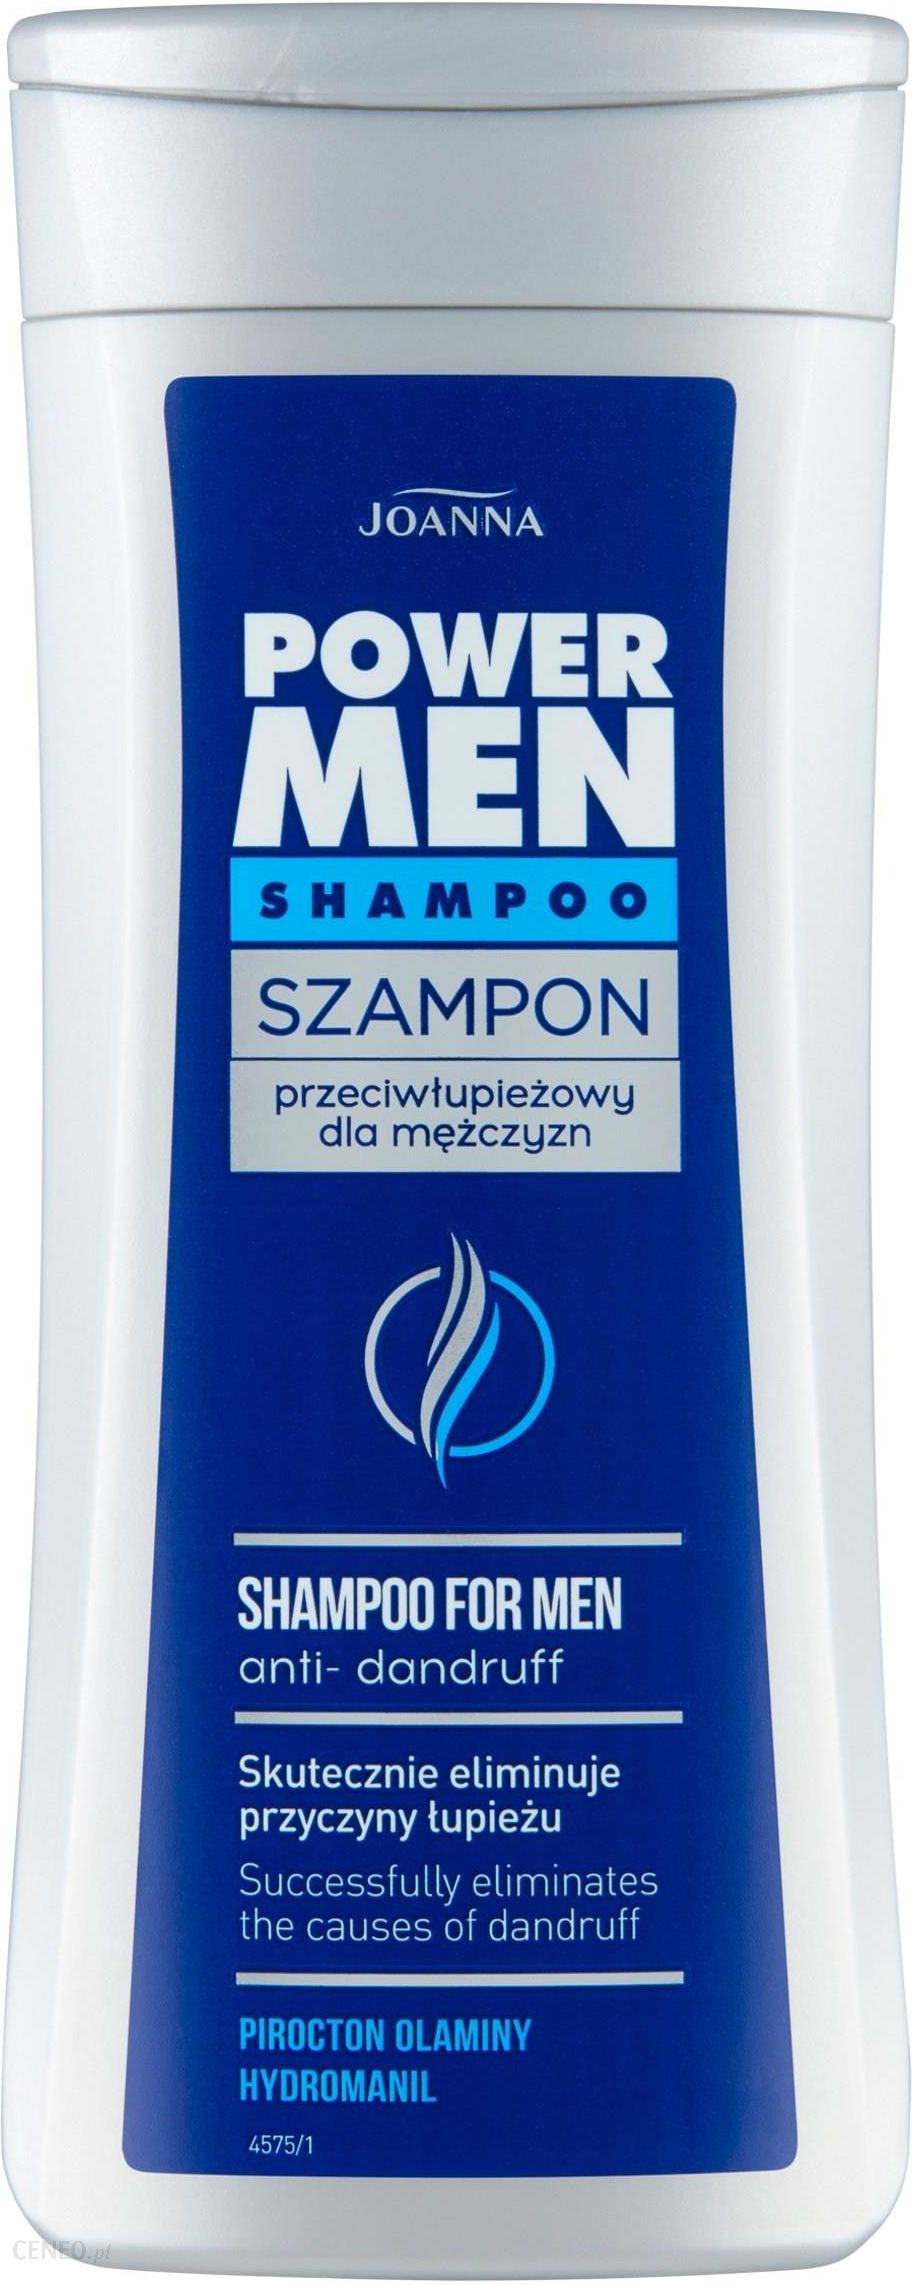 szampon przeciwlupiezowy dla.mezcztzn